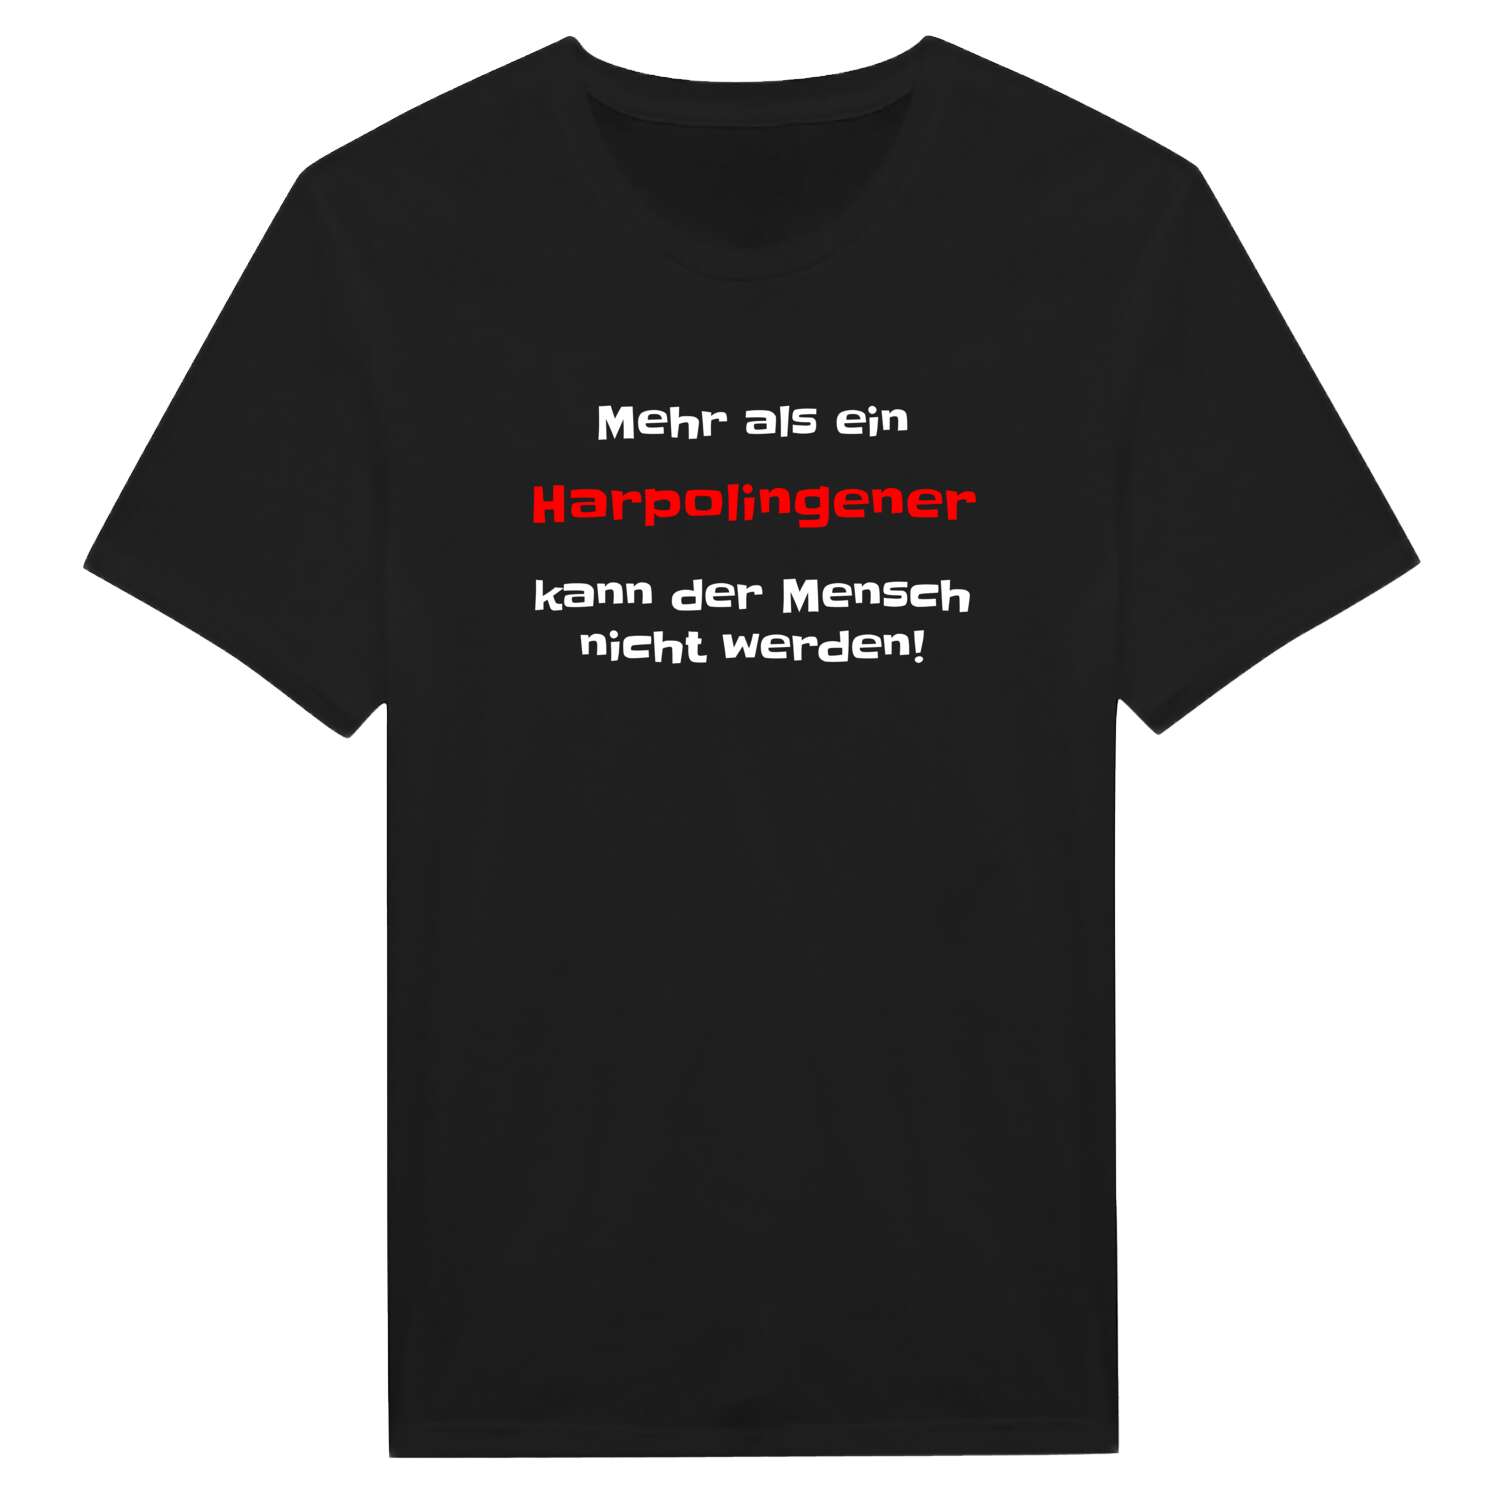 Harpolingen T-Shirt »Mehr als ein«